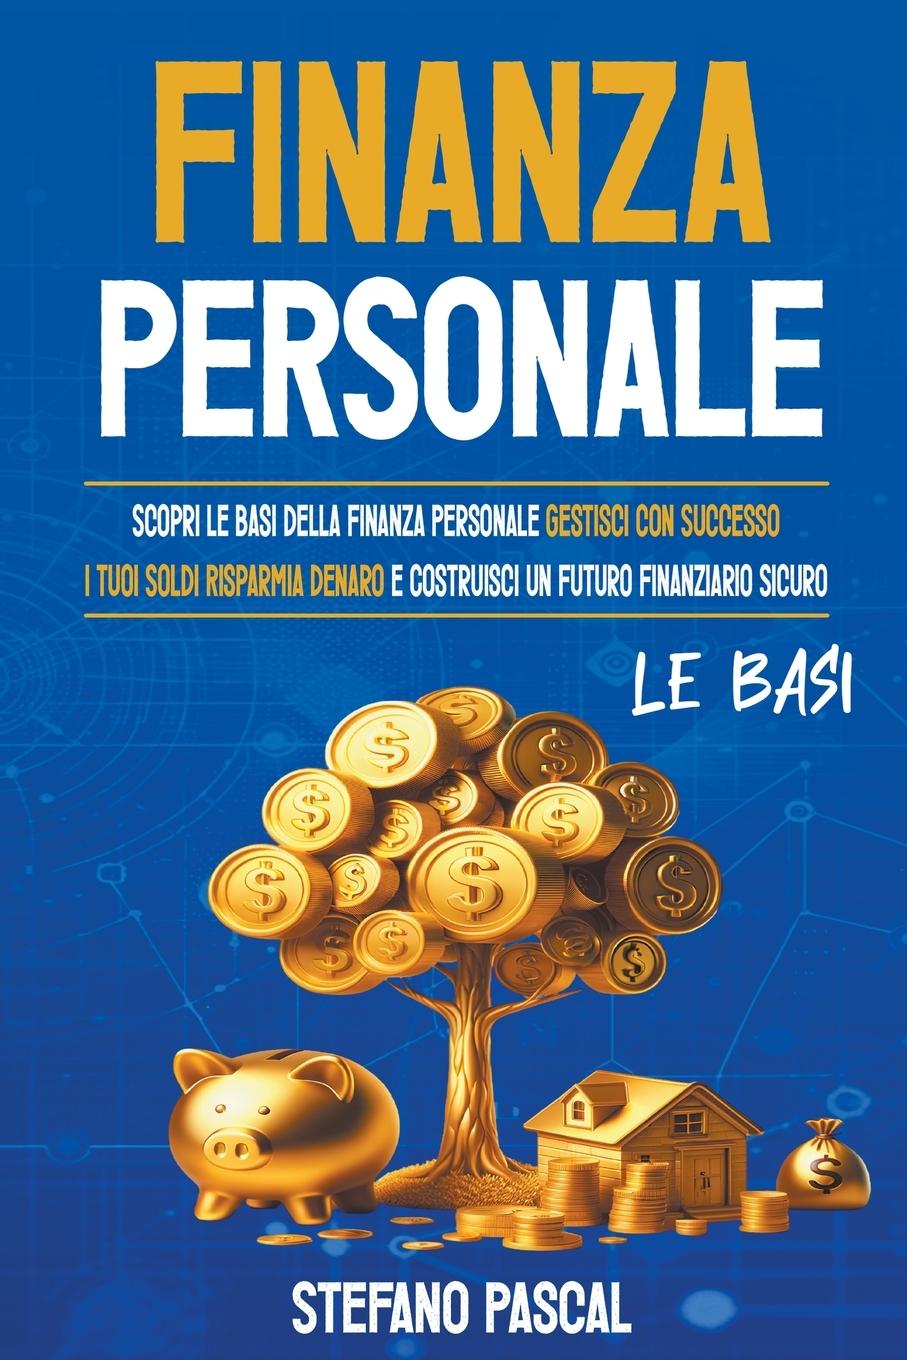 Kniha Finanza Personale Stefano Pascal